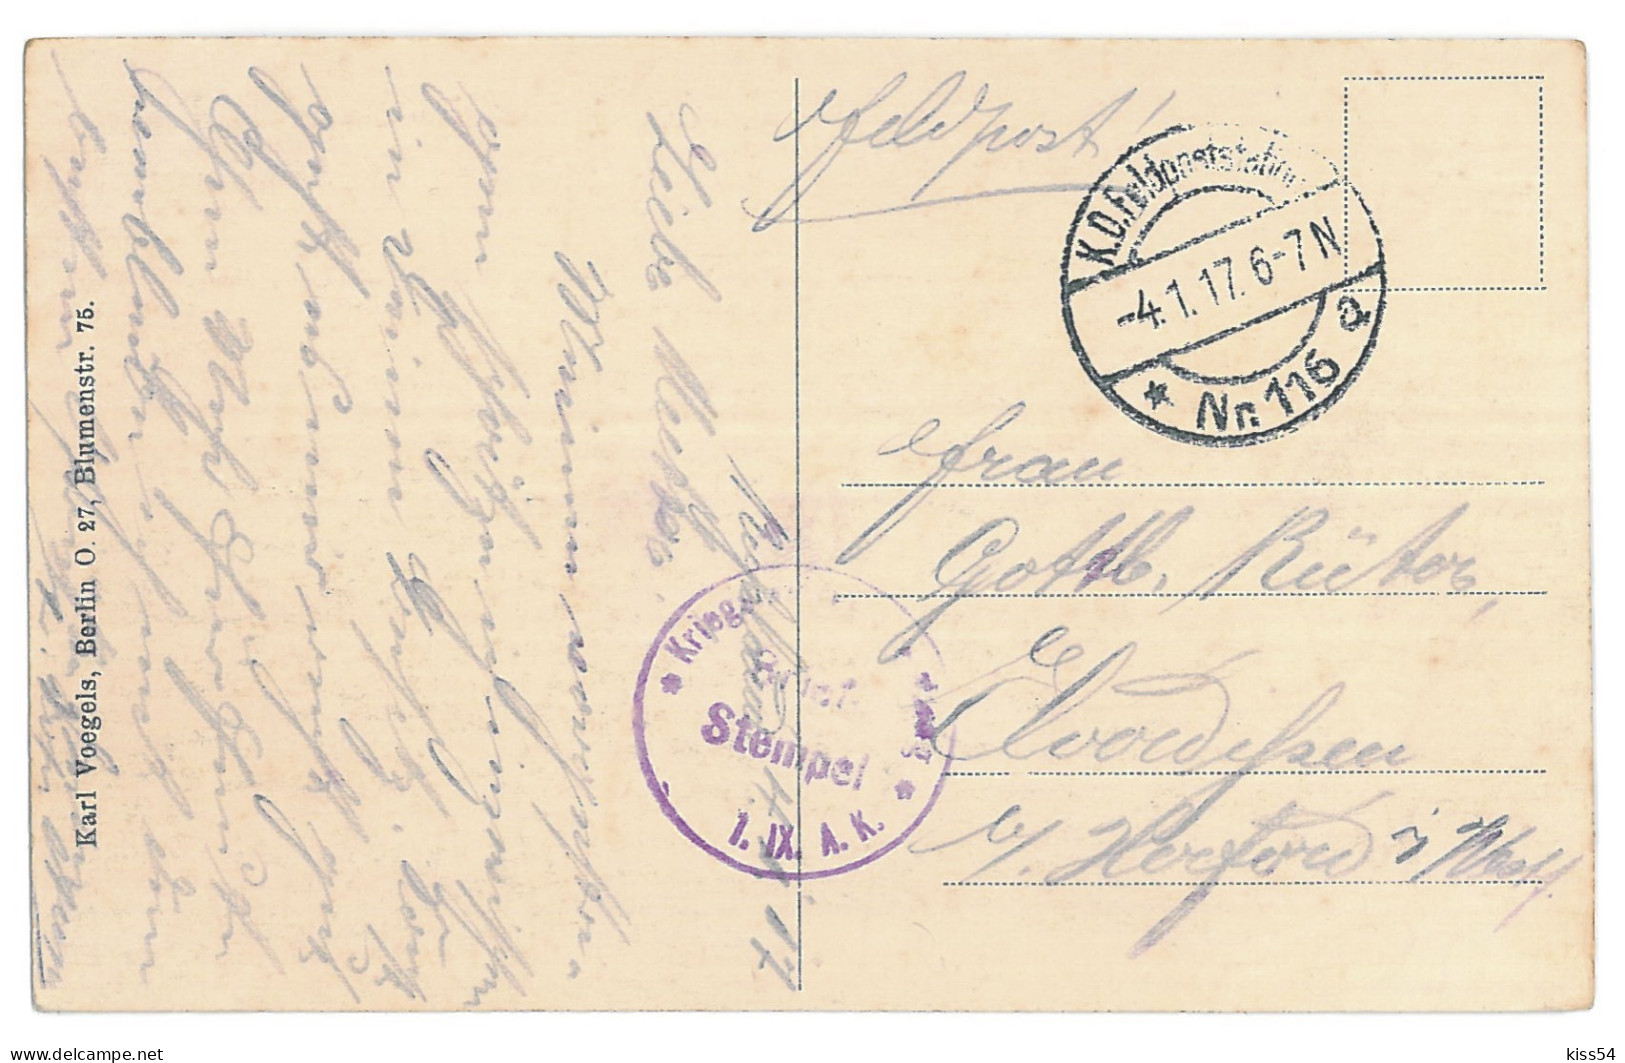 BL 23 - 12791 GRODNO, Belarus, Panorama - Old Postcard, CENSOR - Used - 1917 - Belarus